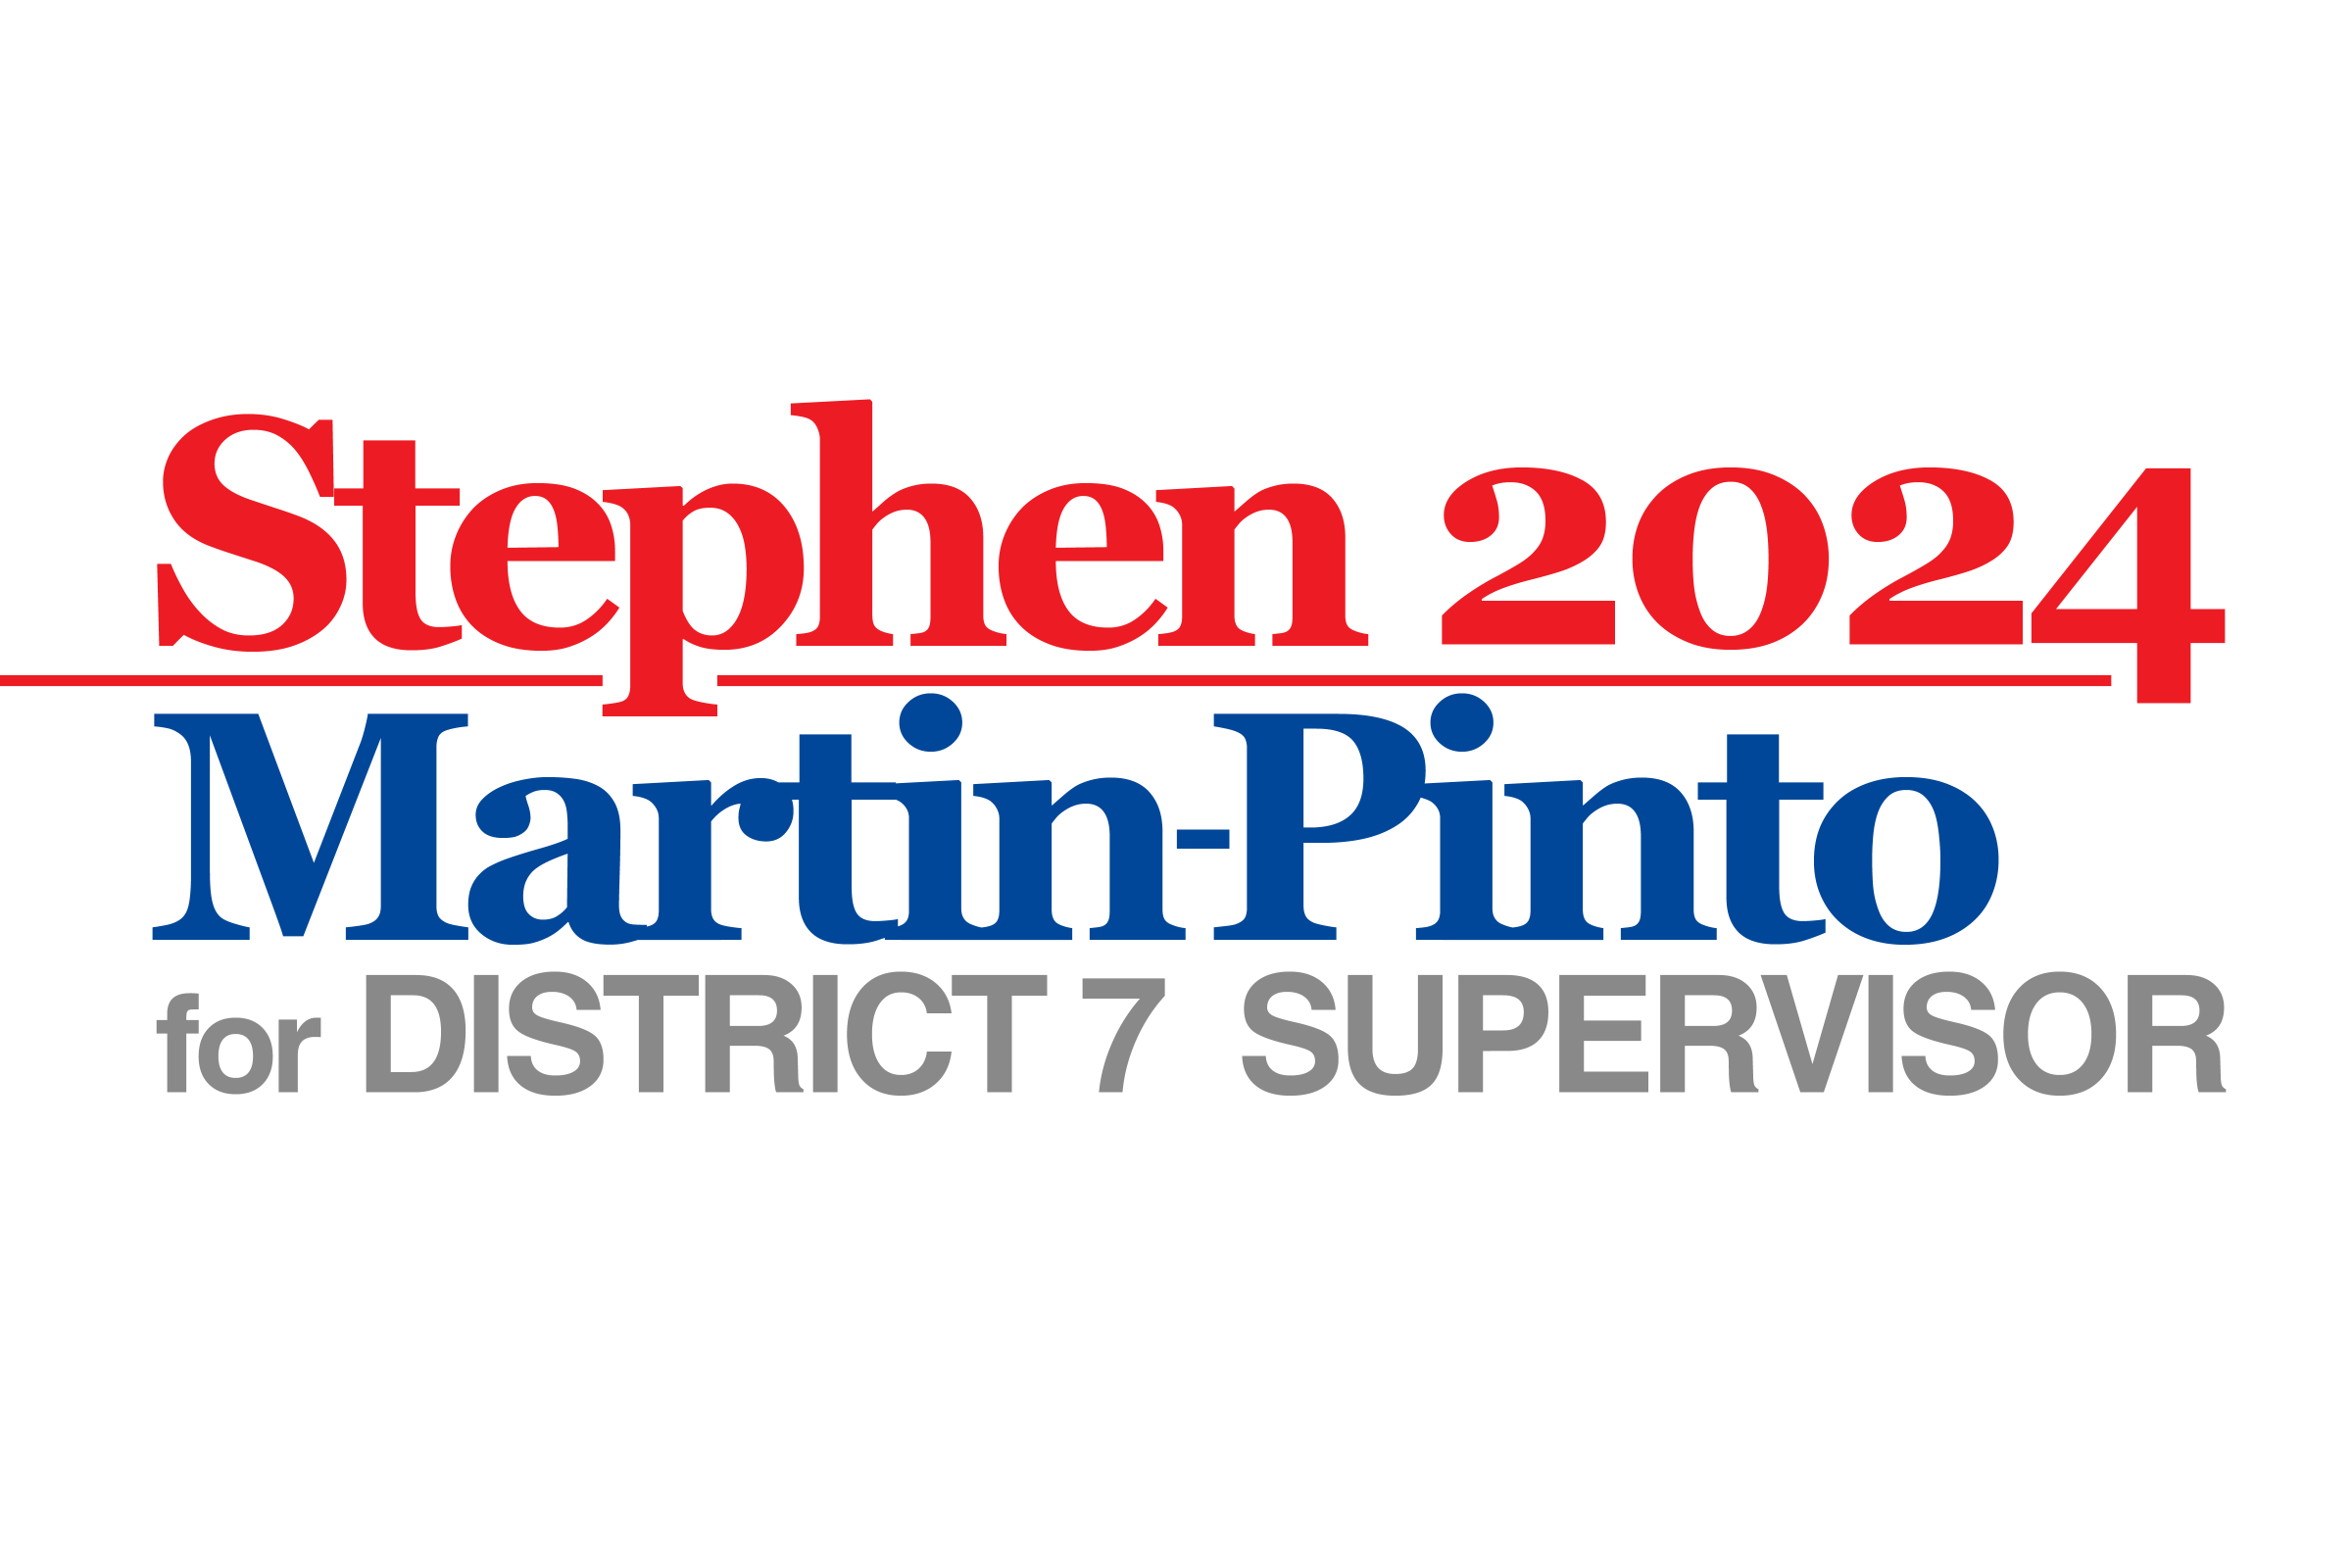 Stephen Martin-Pinto for Supervisor 2024